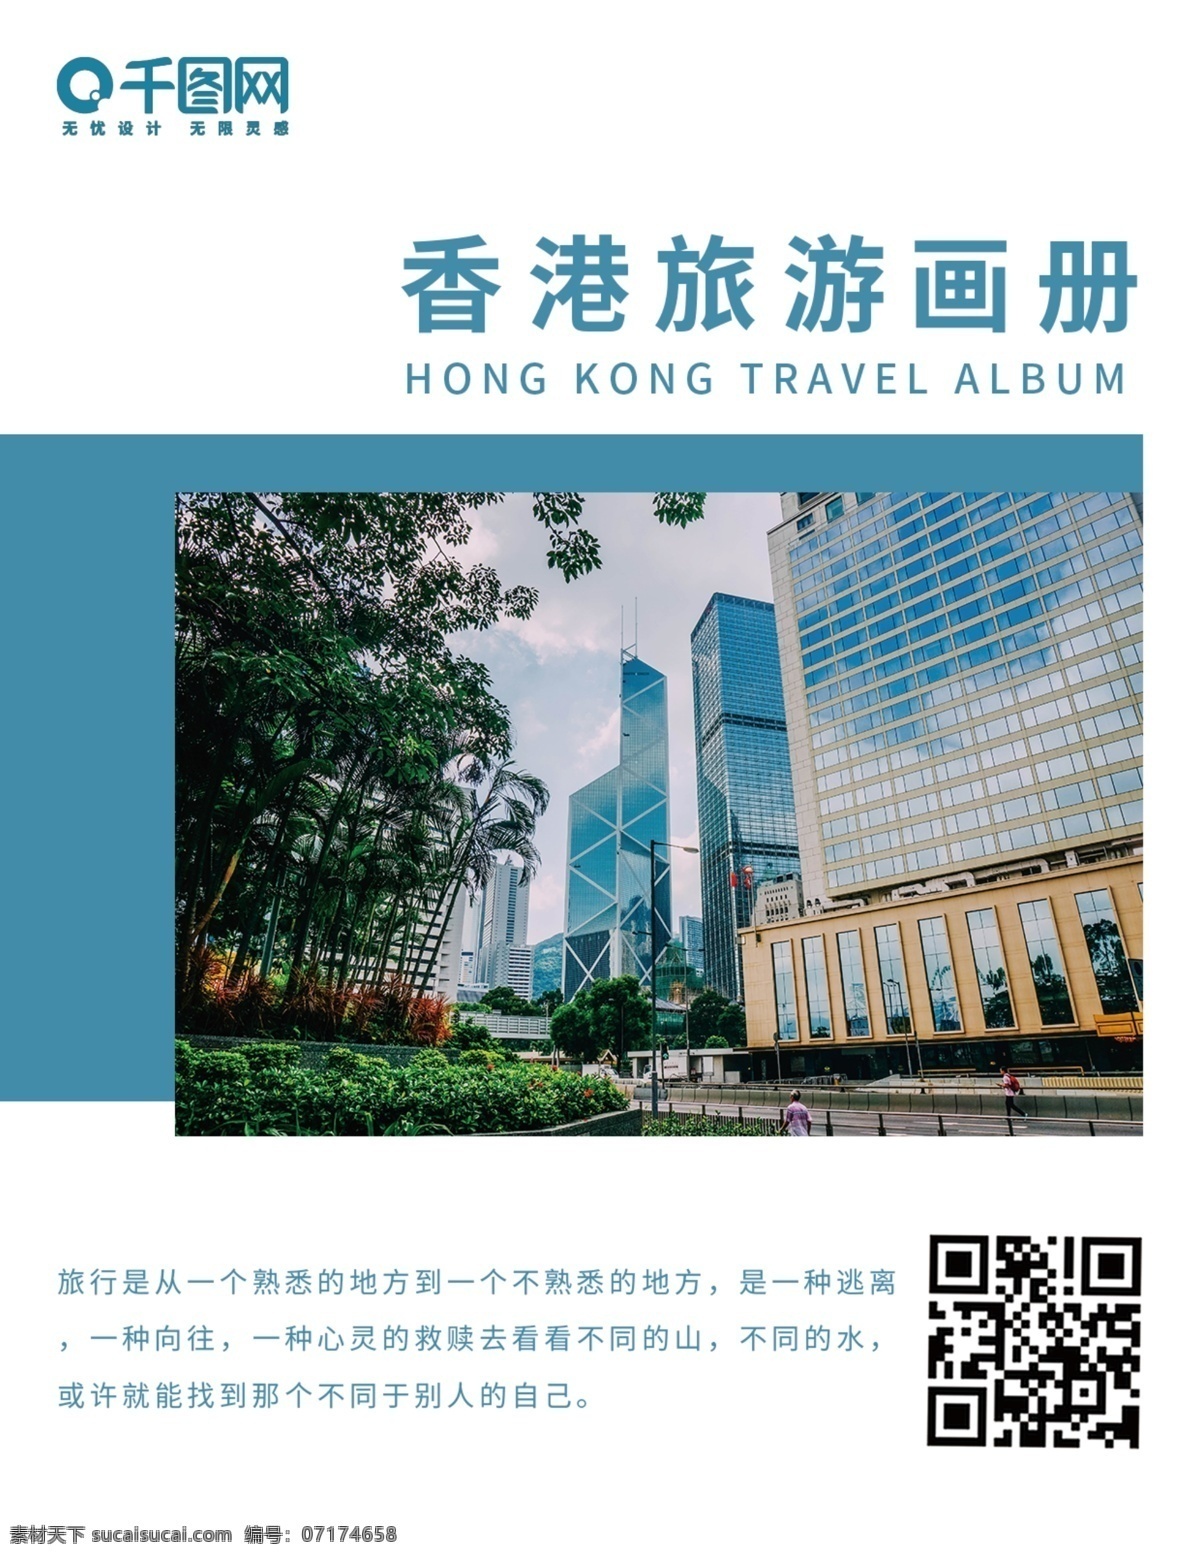 蓝色 小 清新 香港 旅行 旅游 画册 封面 旅游画册 旅行画册 香港旅行 蓝色画册封面